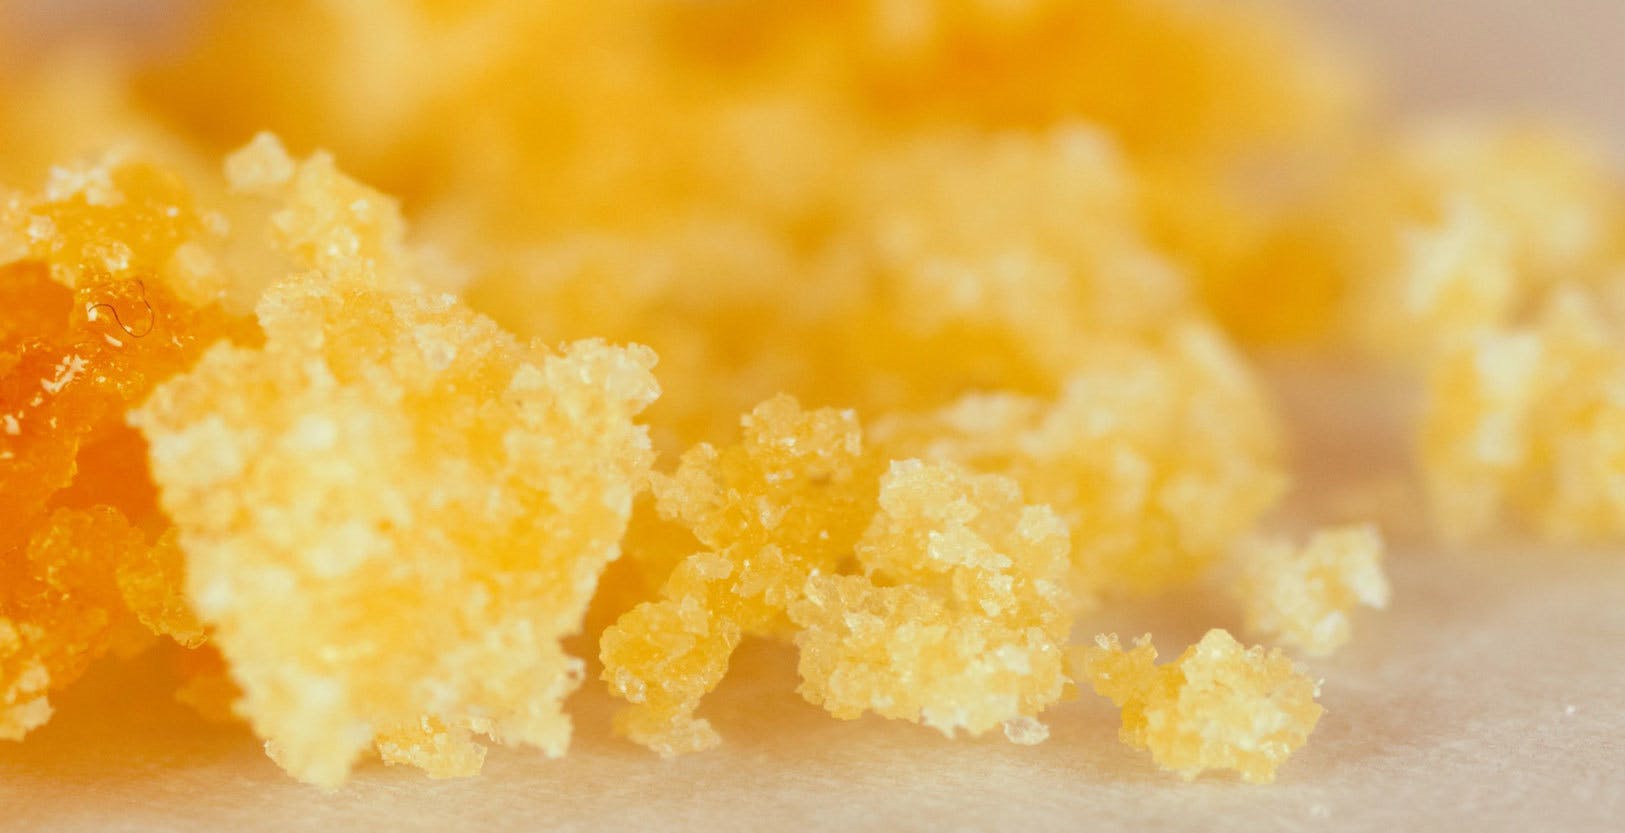 wax-venom-extracts-thca-sugar-crystals-5g